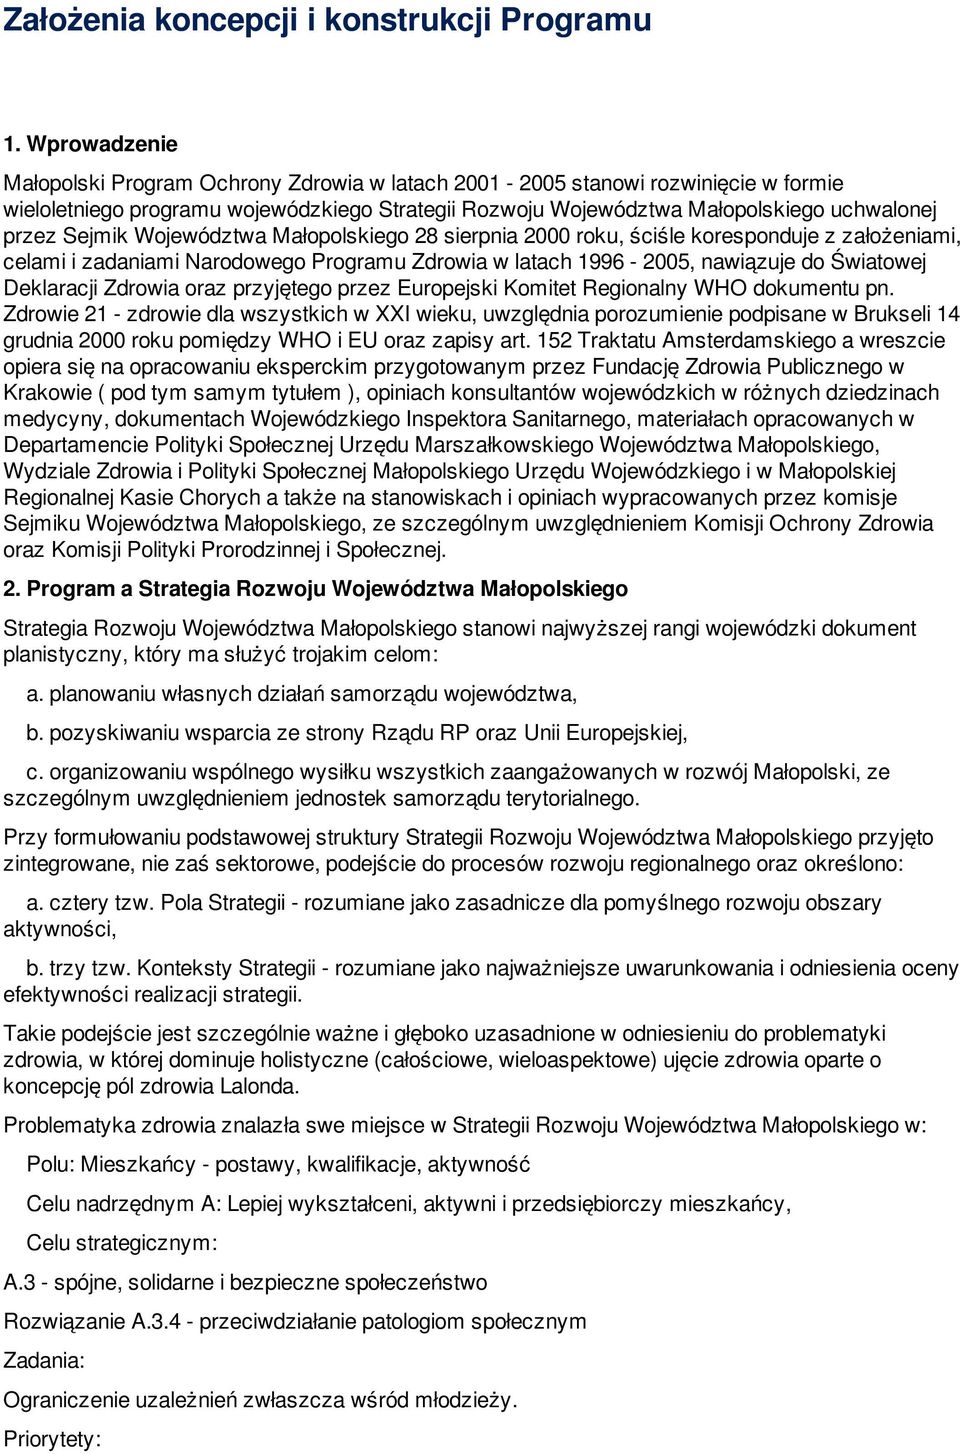 Sejmik Województwa Małopolskiego 28 sierpnia 2000 roku, ściśle koresponduje z założeniami, celami i zadaniami Narodowego Programu Zdrowia w latach 1996-2005, nawiązuje do Światowej Deklaracji Zdrowia